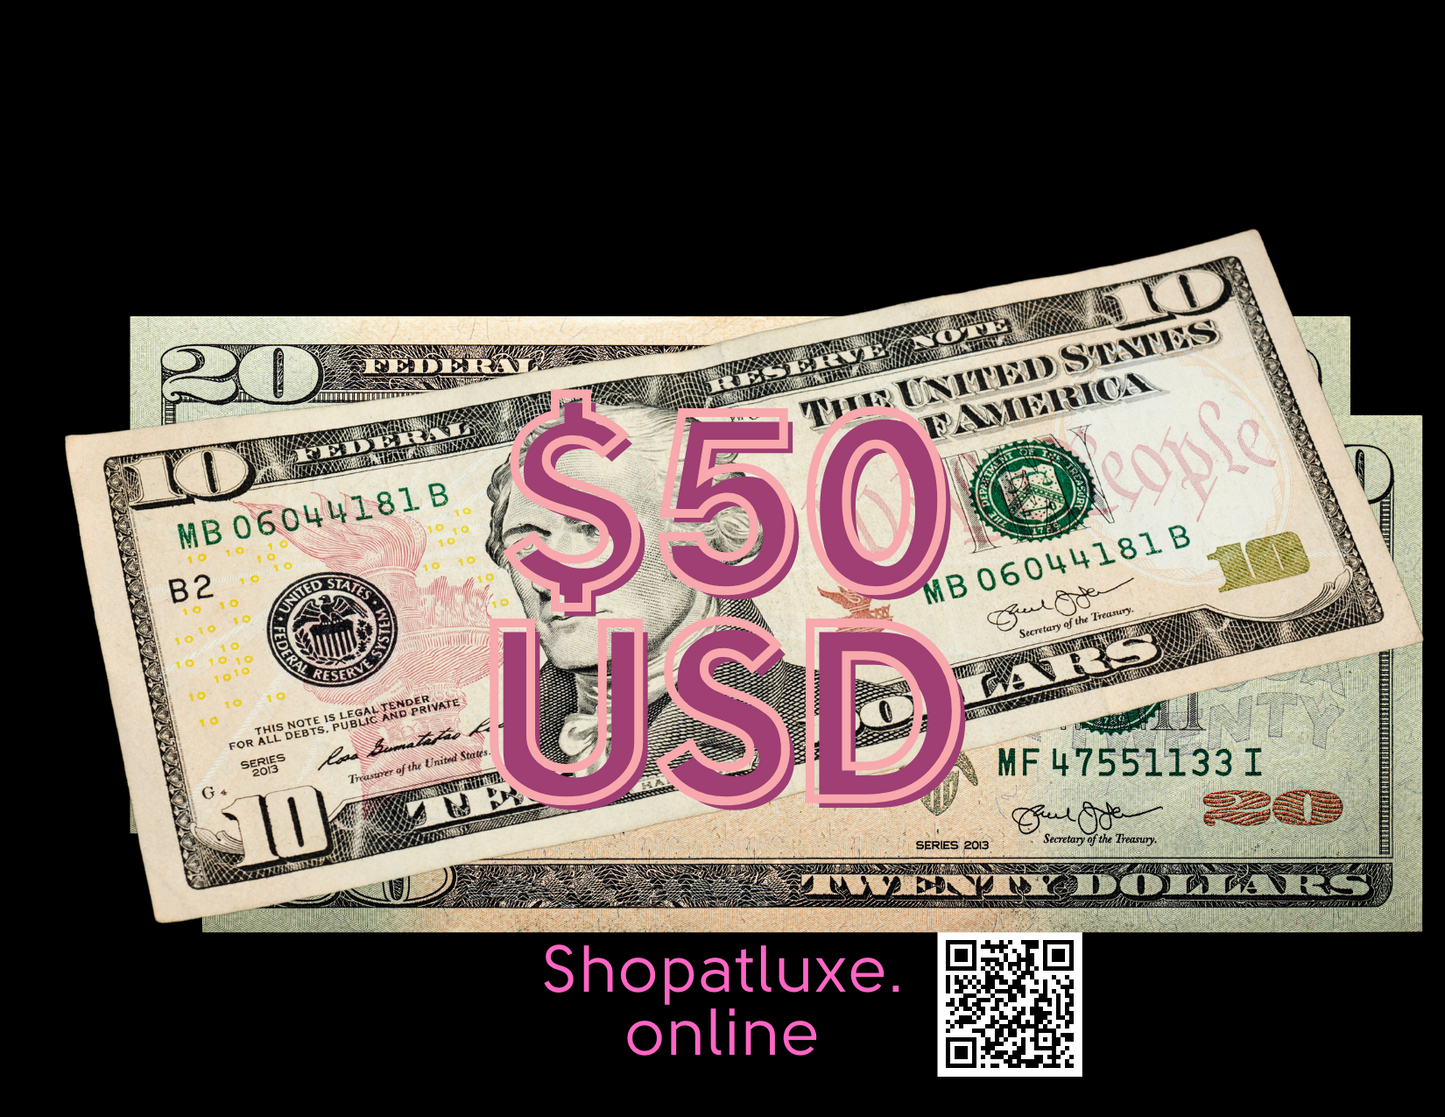 SWEET 16 GIFT CARD - Shopatluxe.Online